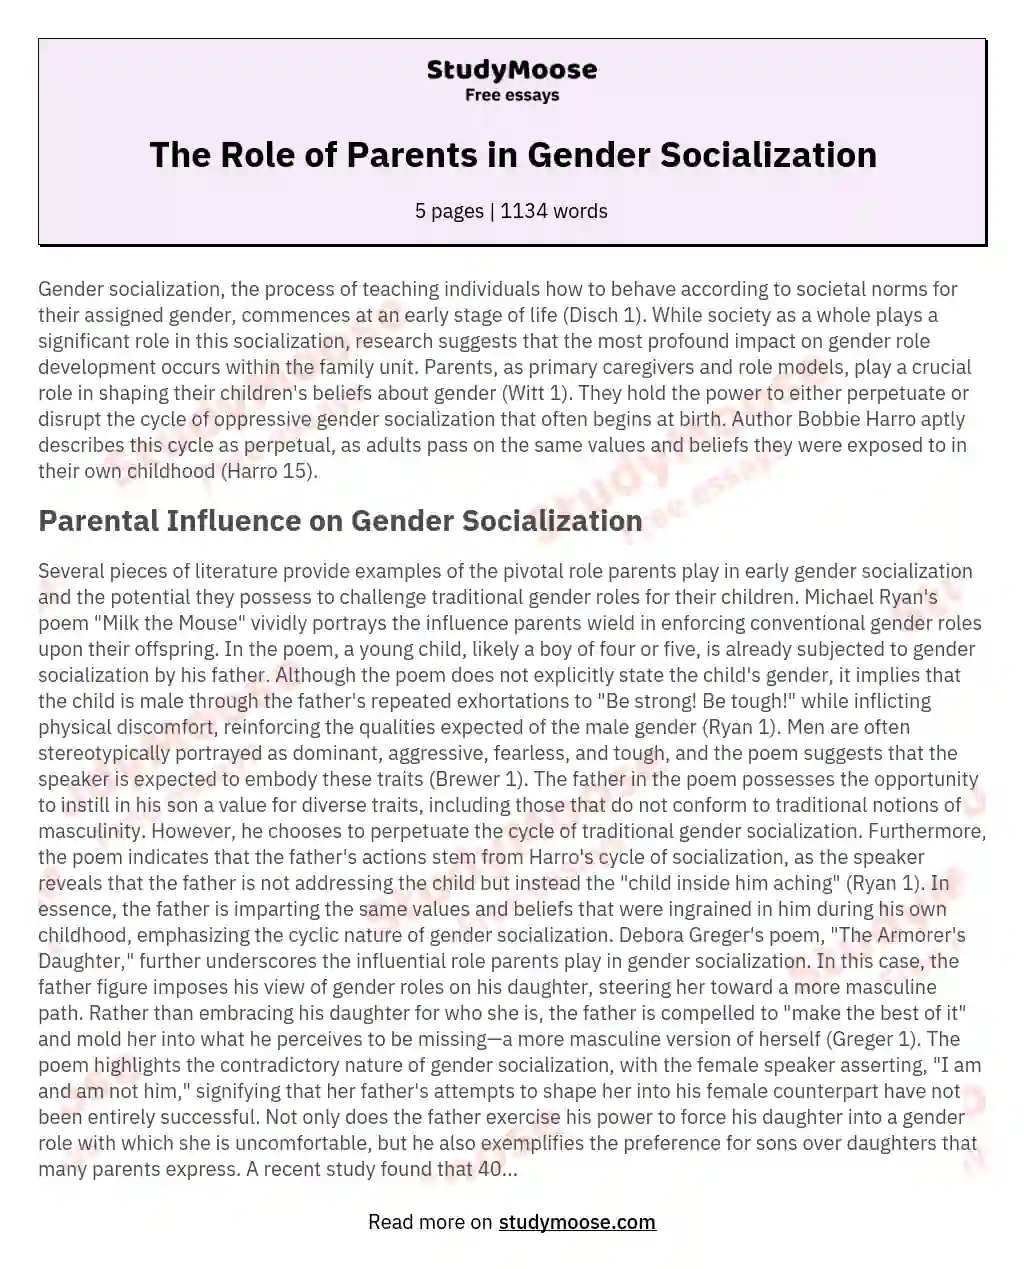 gender socialization